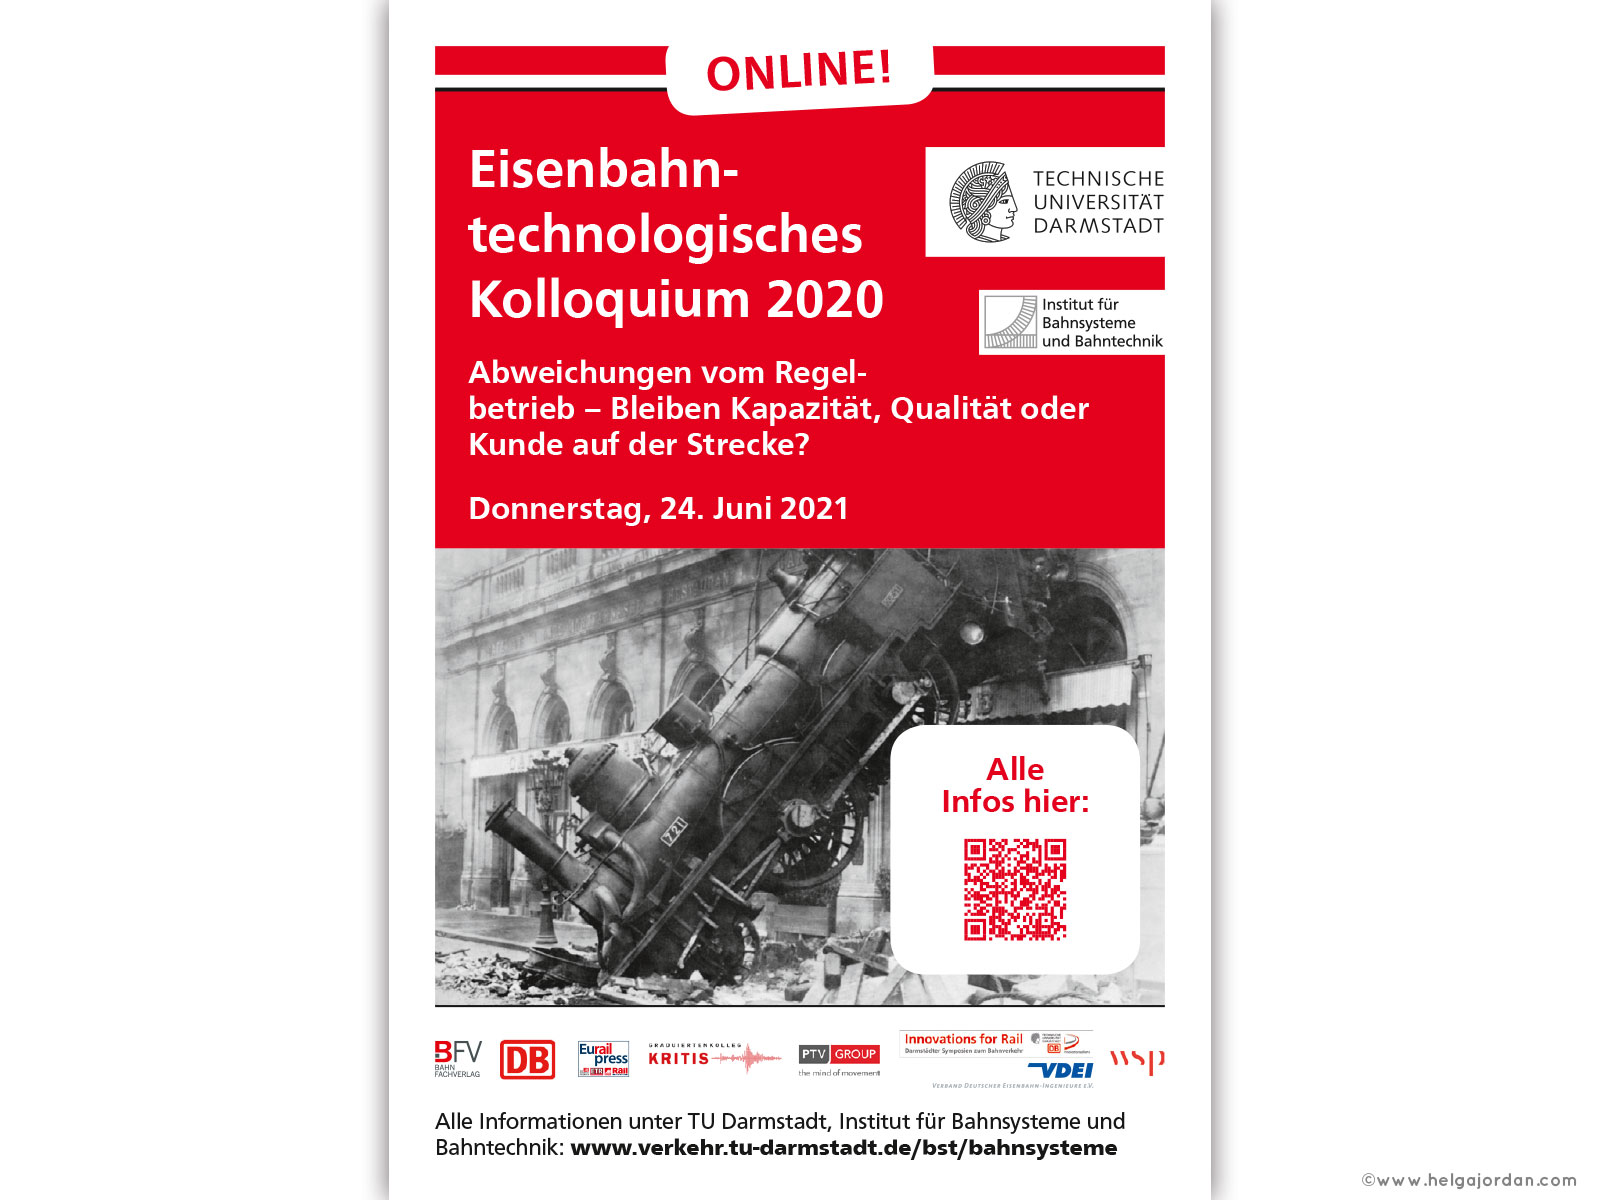 Anzeigen, Print, Digital; Design innerhalb des CI der TU Darmstadt